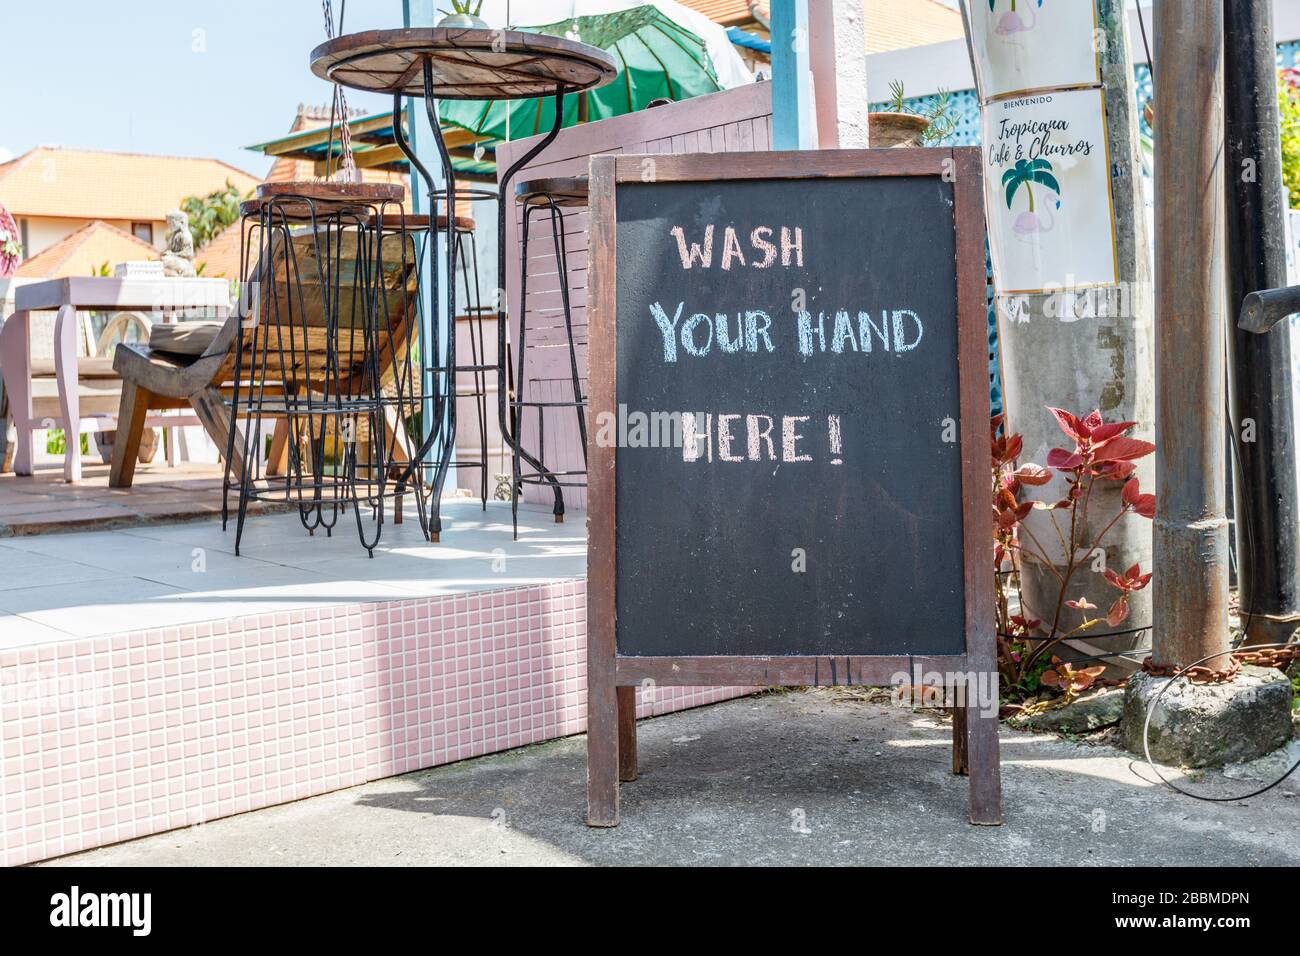 April 2020. Café-Schild "waschen Sie sich hier die Hände" während der Quarantäne für COVID-19. Canggu, Bali beliebte Touristengegend. Indonesien. Stockfoto